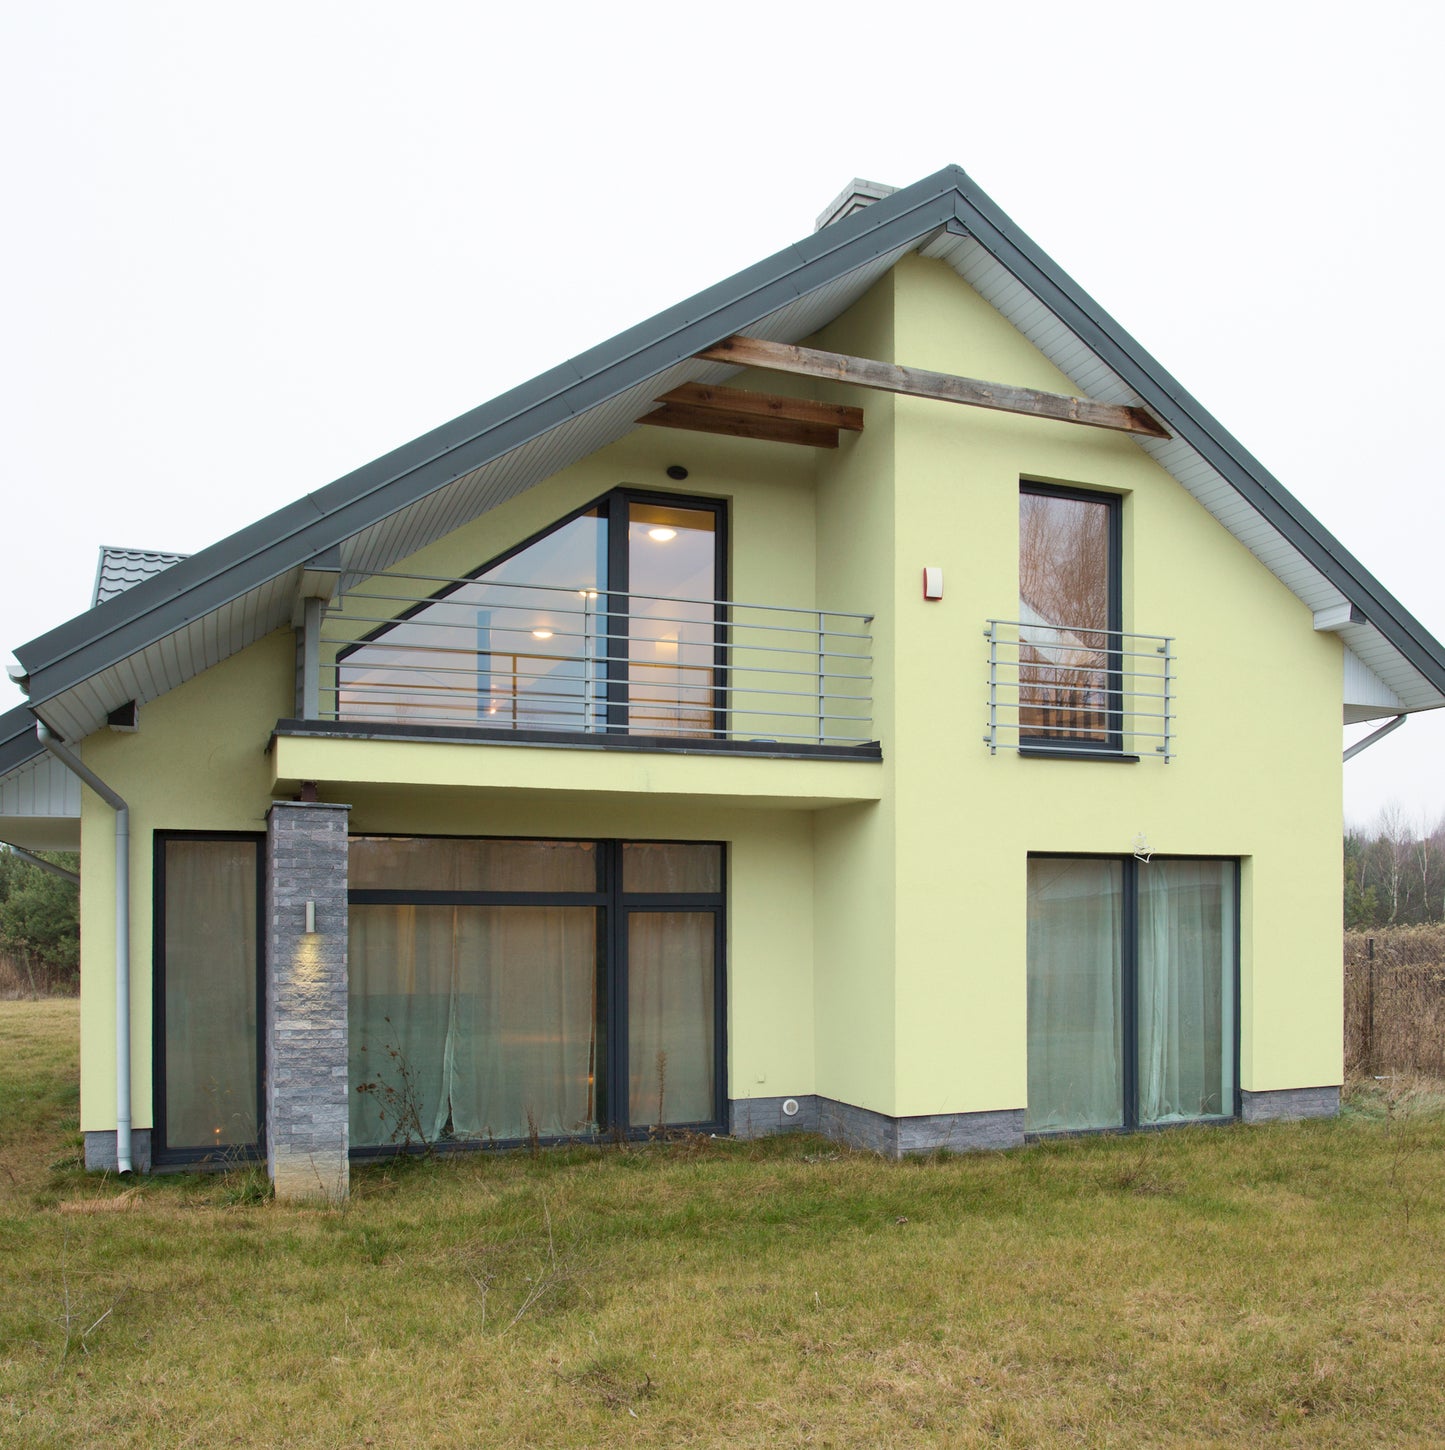 Derendo Fassadenfarbe Buttergelb mit ULTRA Wetterschutz und Abperleffekt